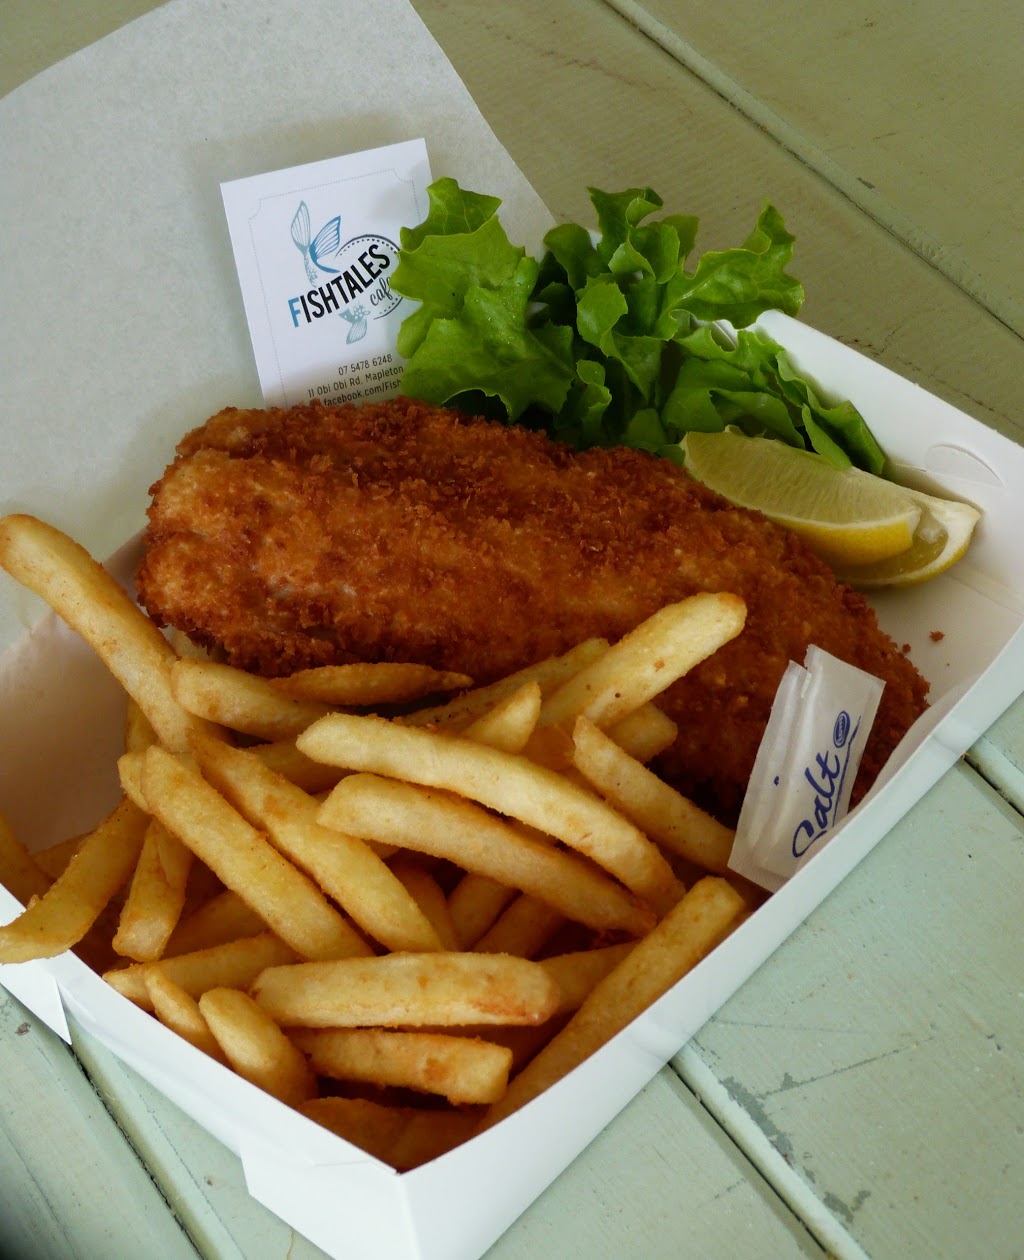 Fishtales Seafood Cafe | cafe | 11 Obi Obi Rd, Mapleton QLD 4560, Australia | 0754786248 OR +61 7 5478 6248